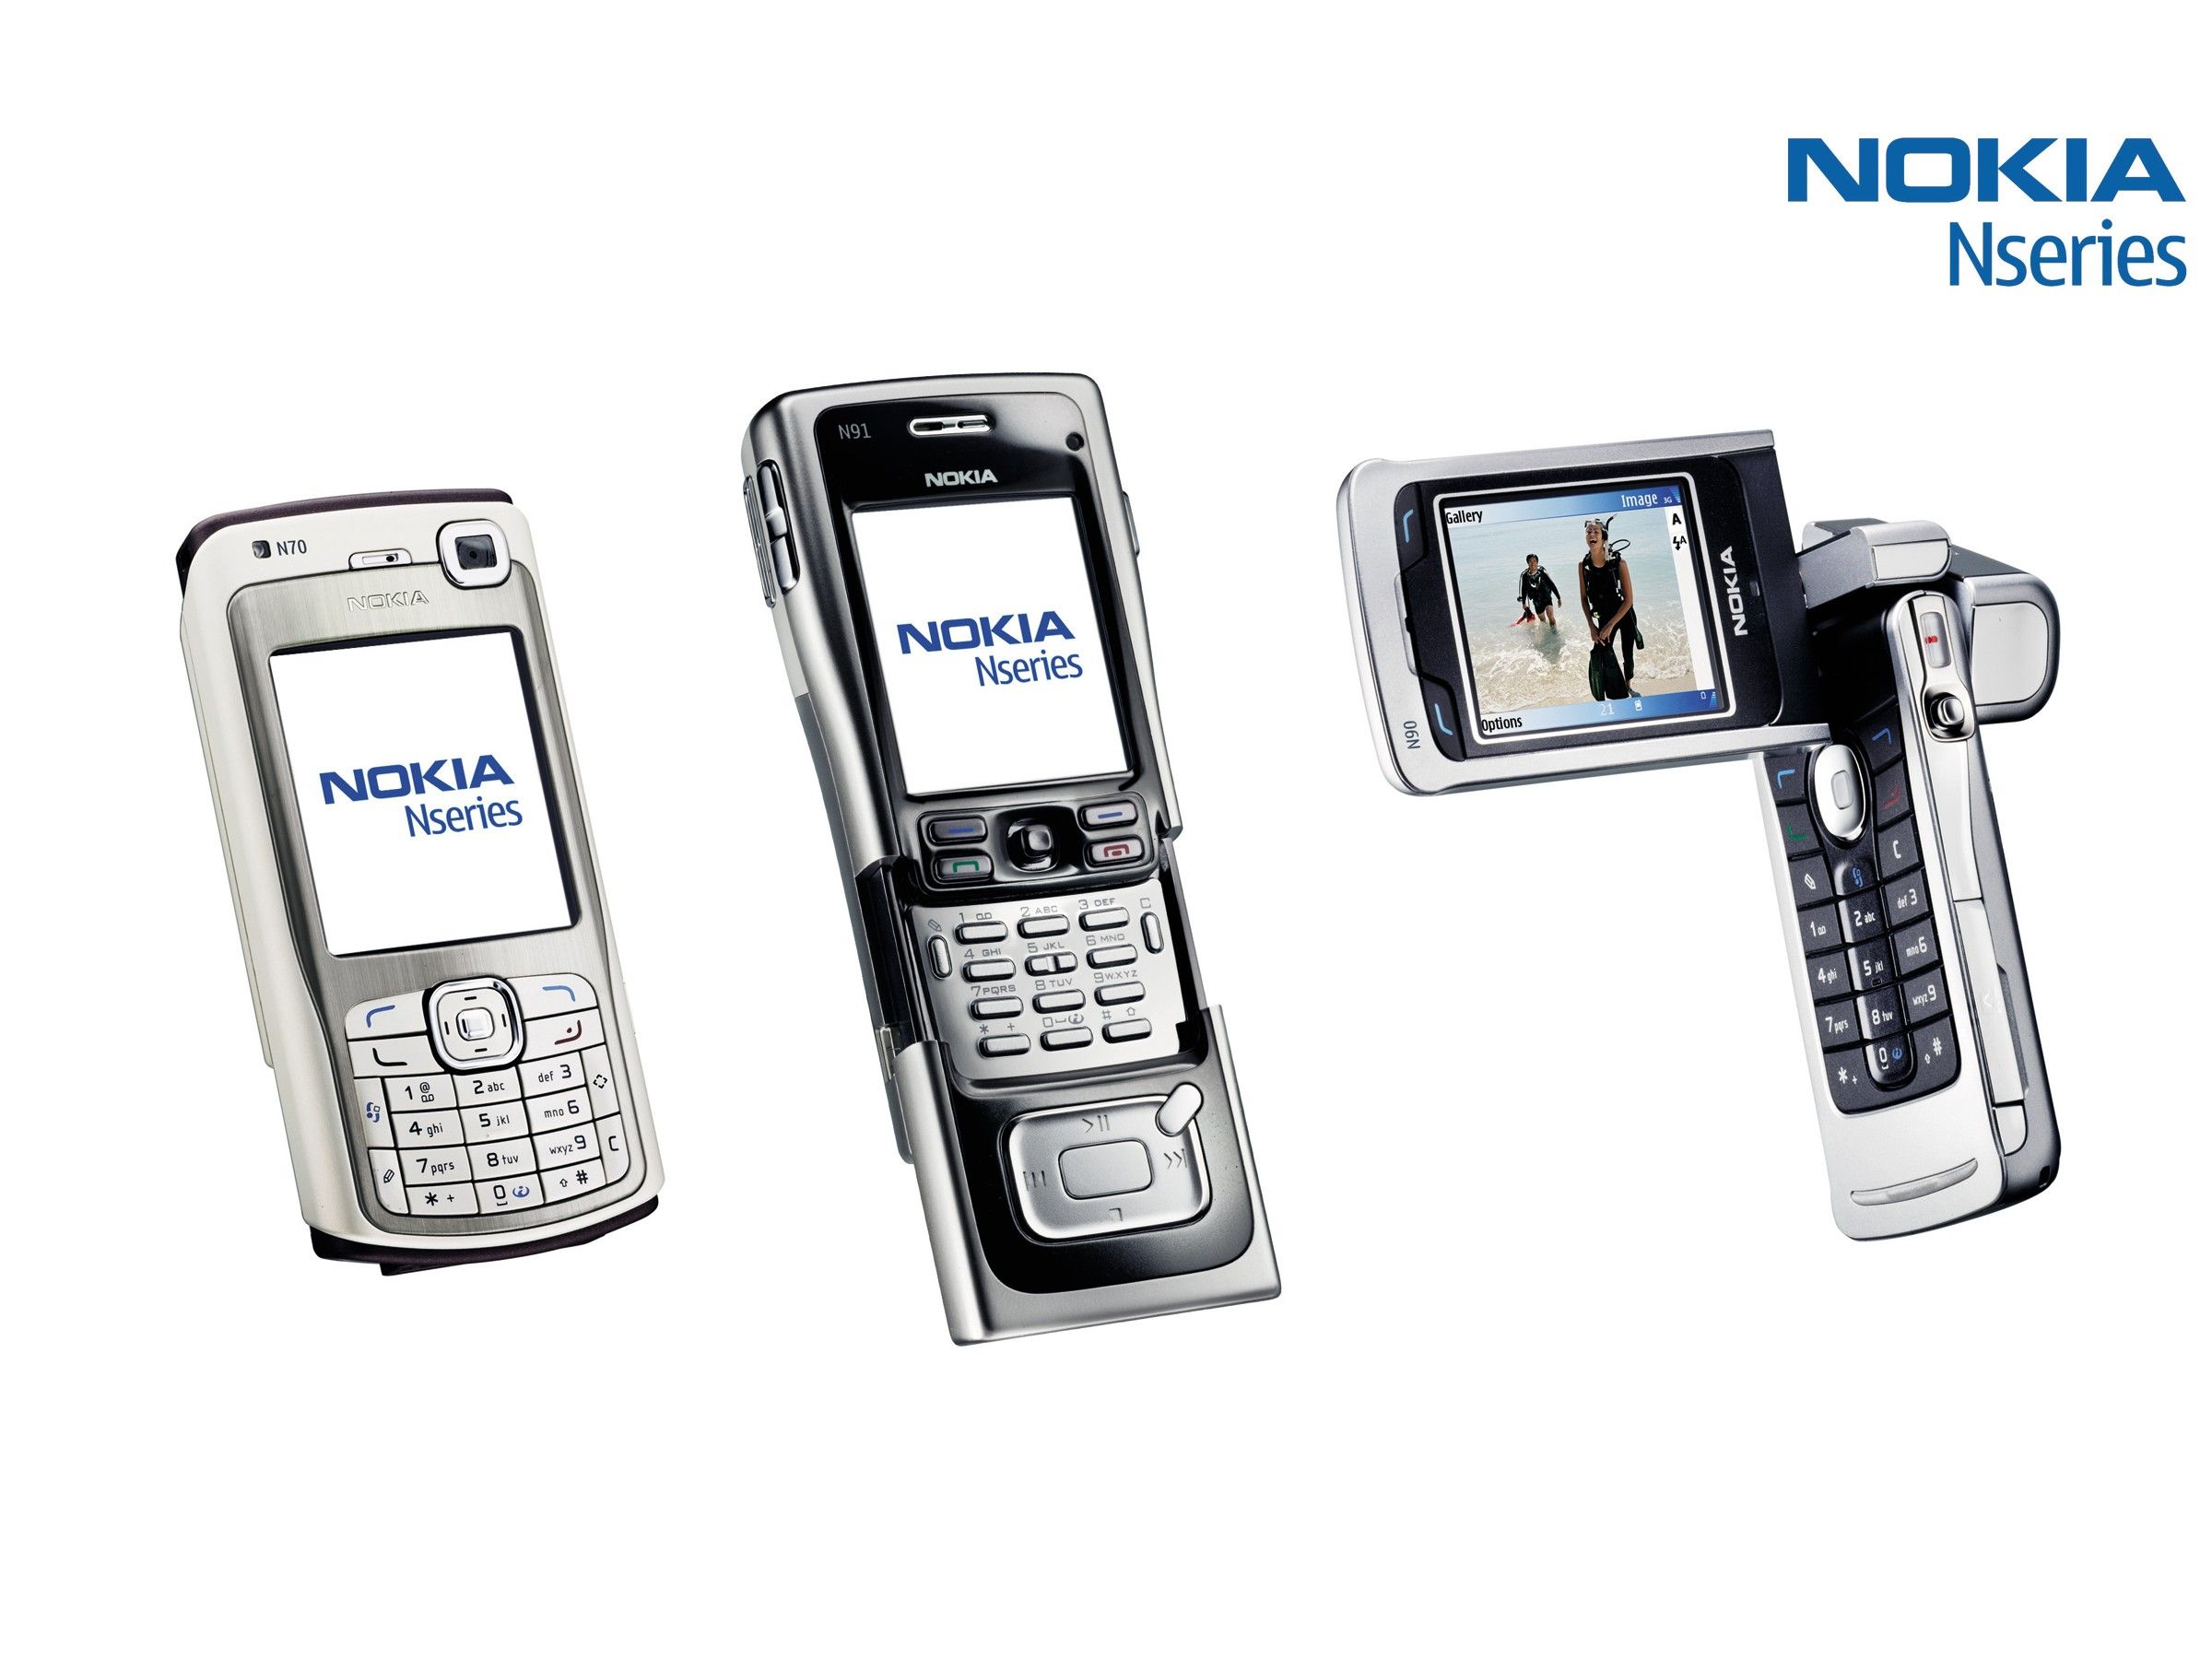 诺基亚(NOKIA) N97 精英版手机图片欣赏,图91-万维家电网